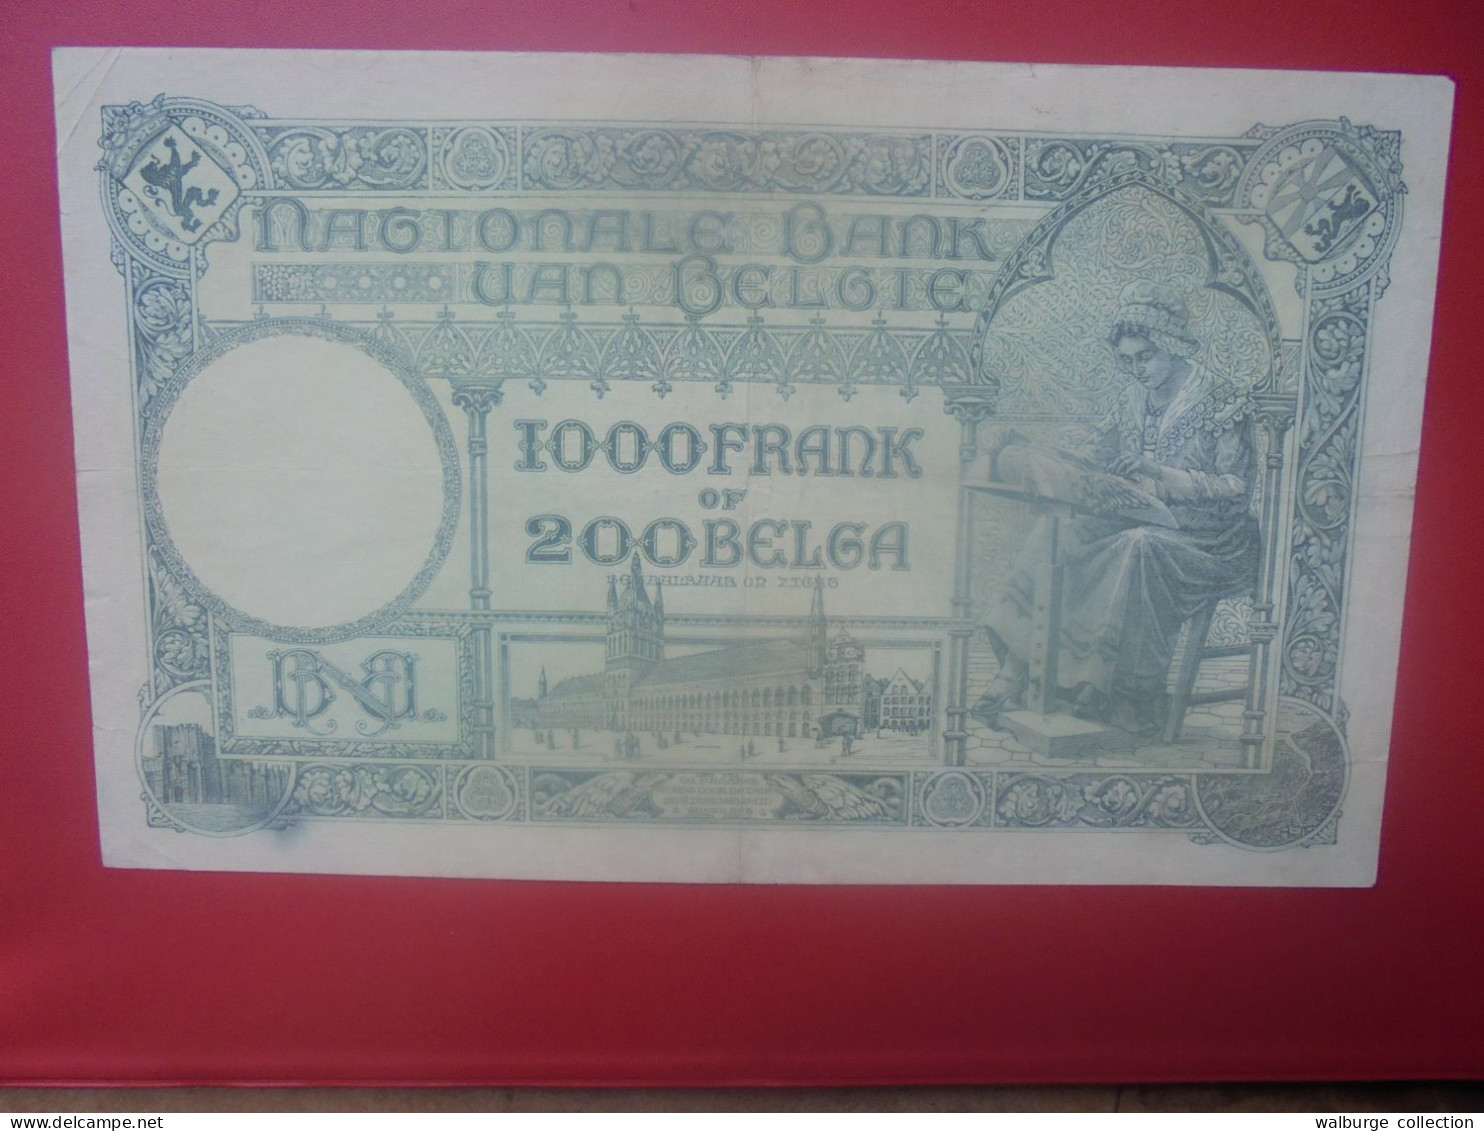 BELGIQUE 1000 FRANCS 1934 Circuler COTES:20-40-100 EURO (B.33) - 1000 Francos & 1000 Francos-200 Belgas